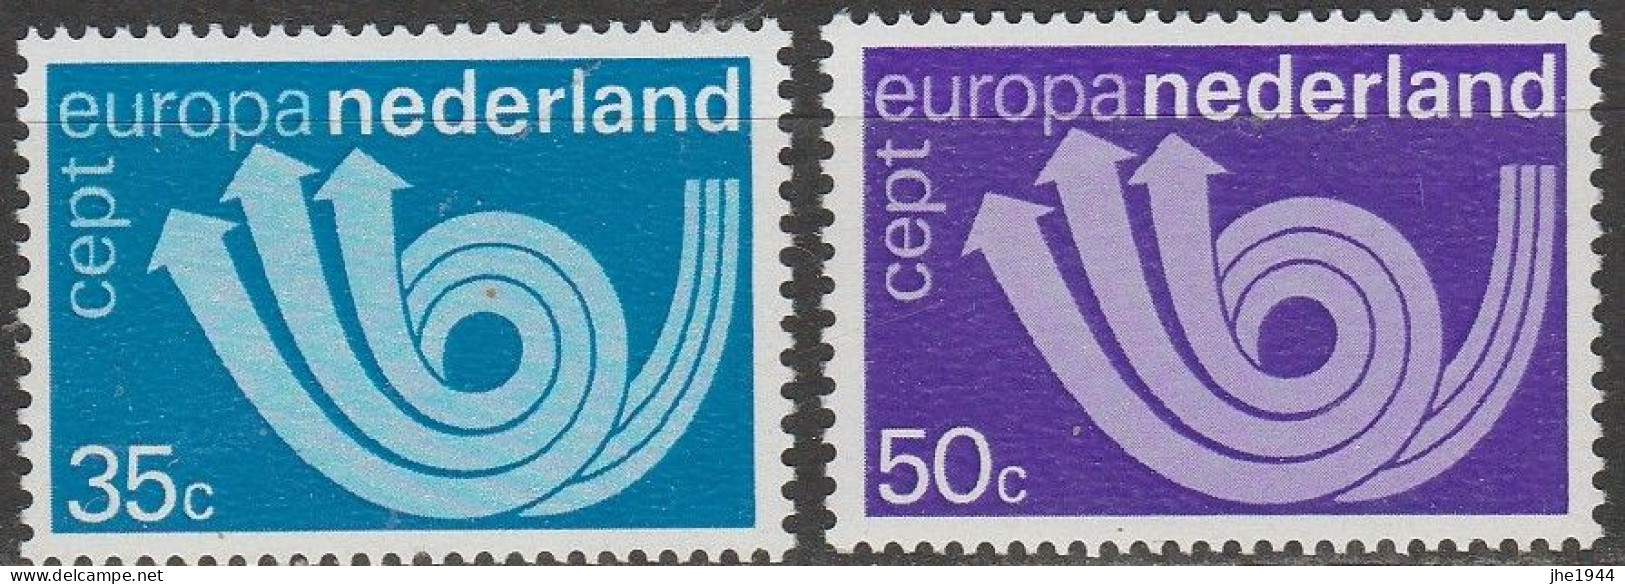 Europa 1973 Dessins communs Voir liste des timbres à vendre 15 pays **